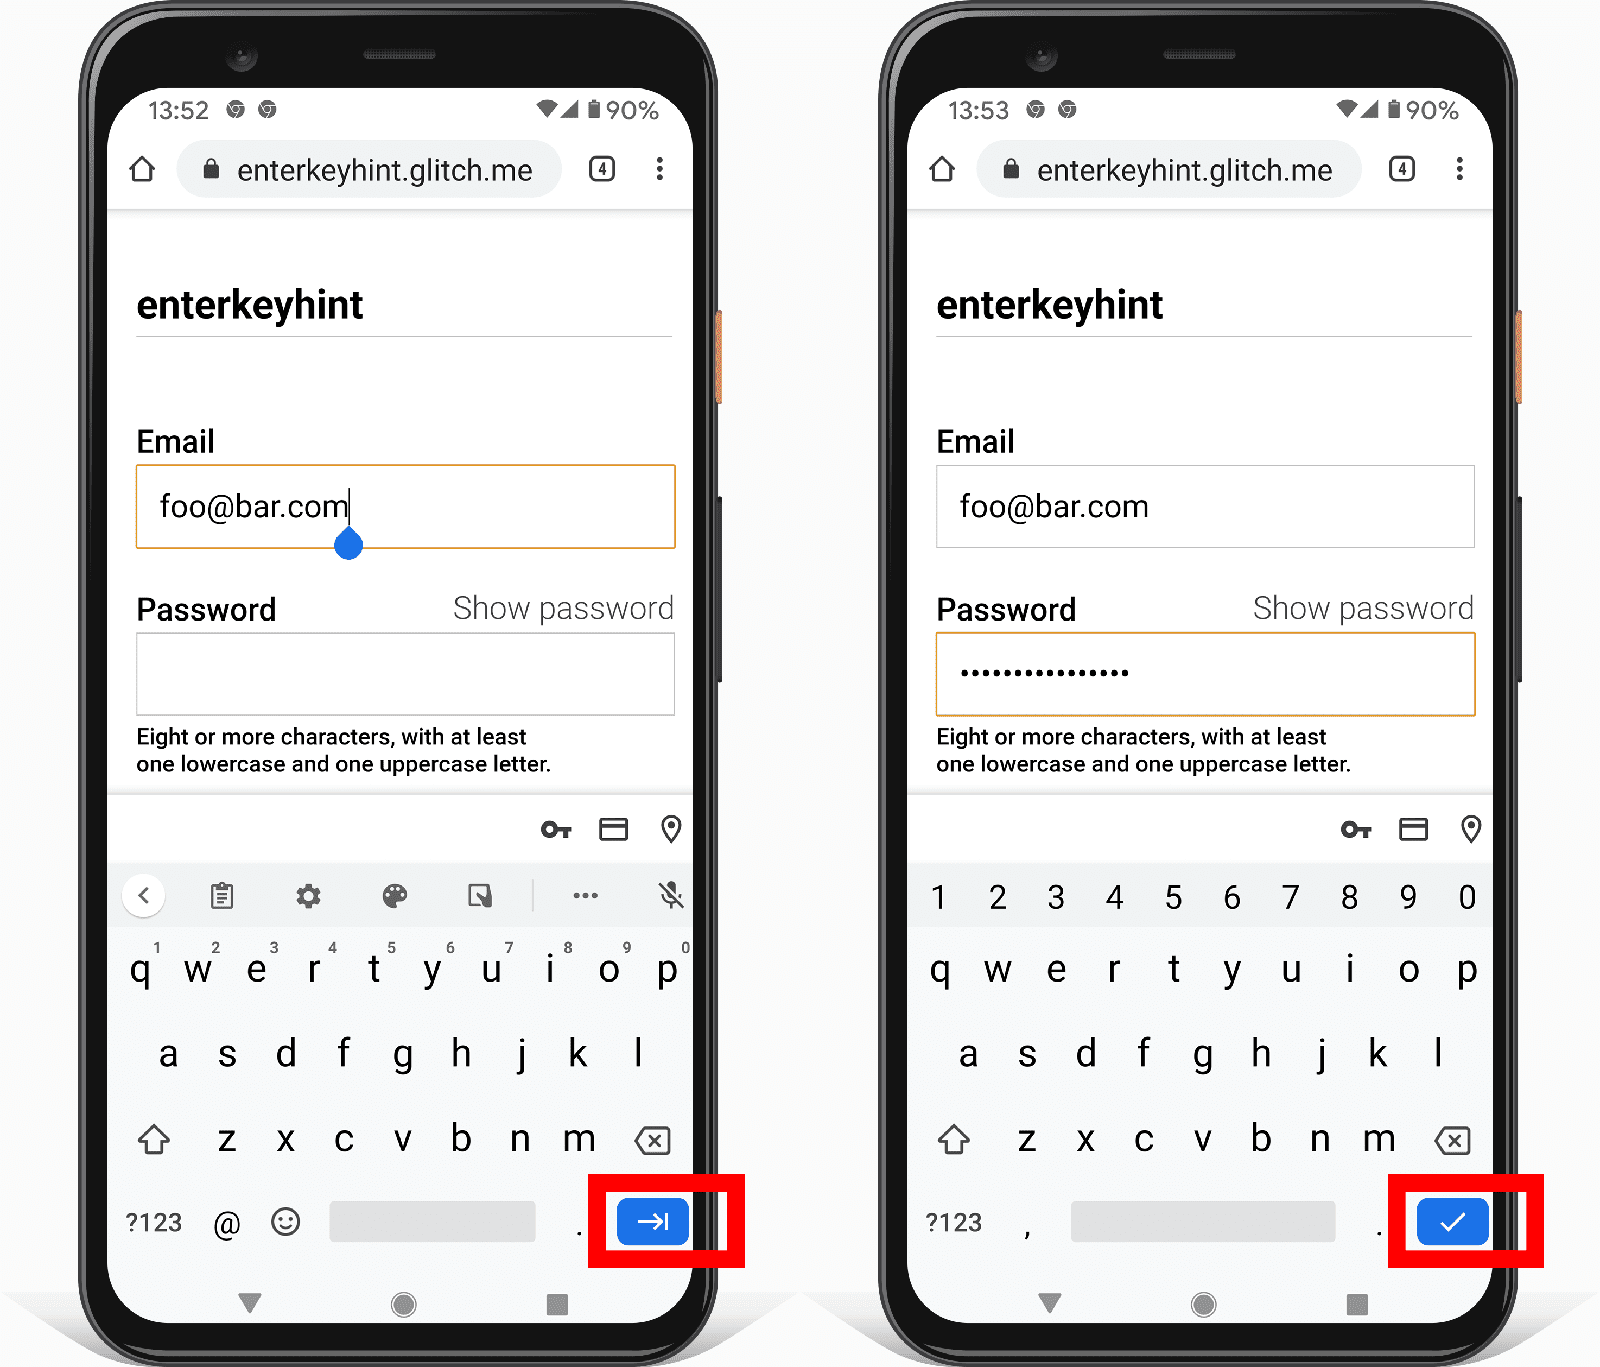 Два снимка экрана формы адреса на Android, показывающие, как входной атрибут enterkeyhint меняет значок кнопки ввода.